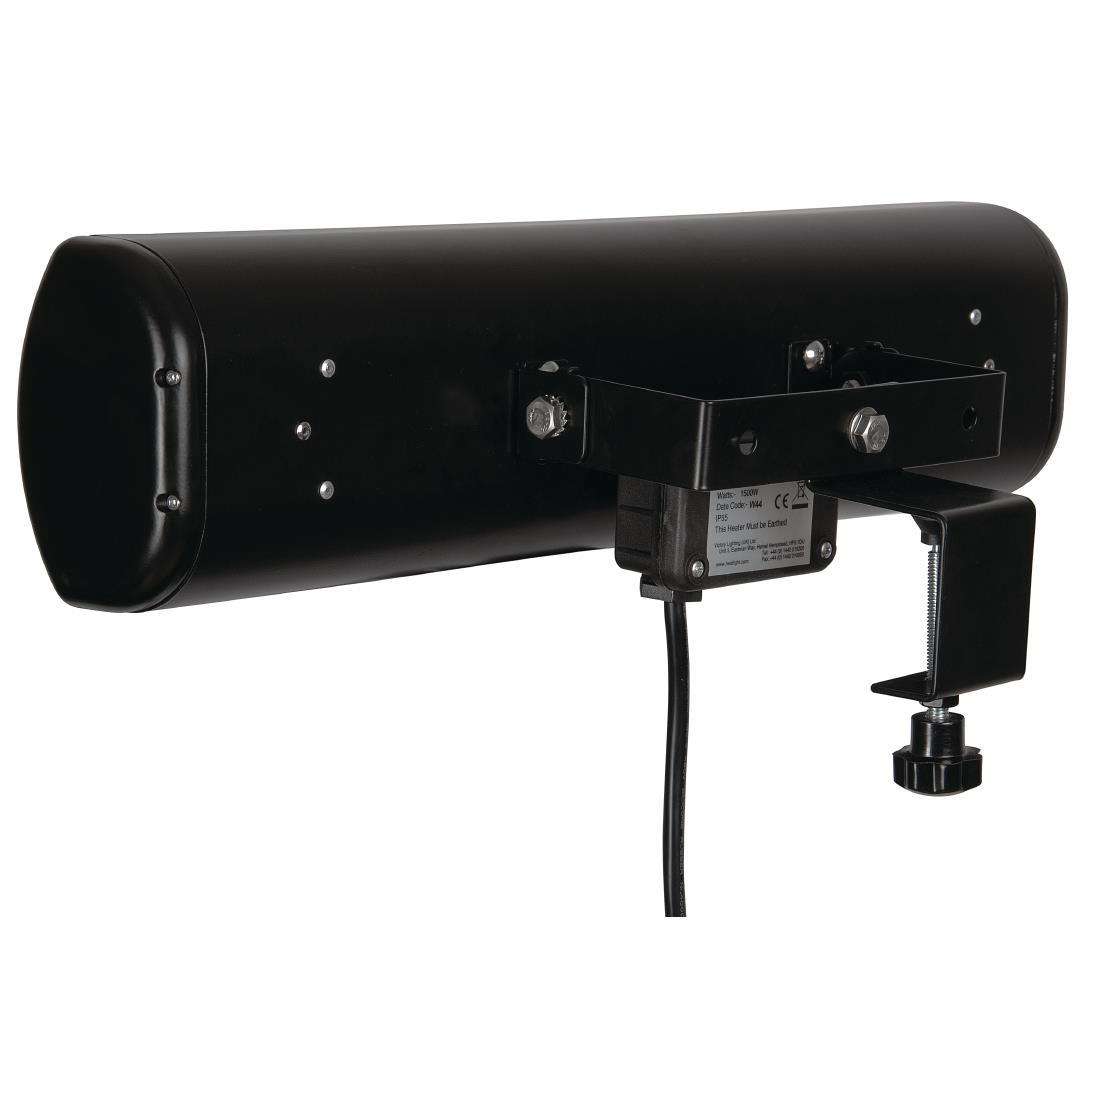 Heatlight Black Patio Heater - GH981  - 2